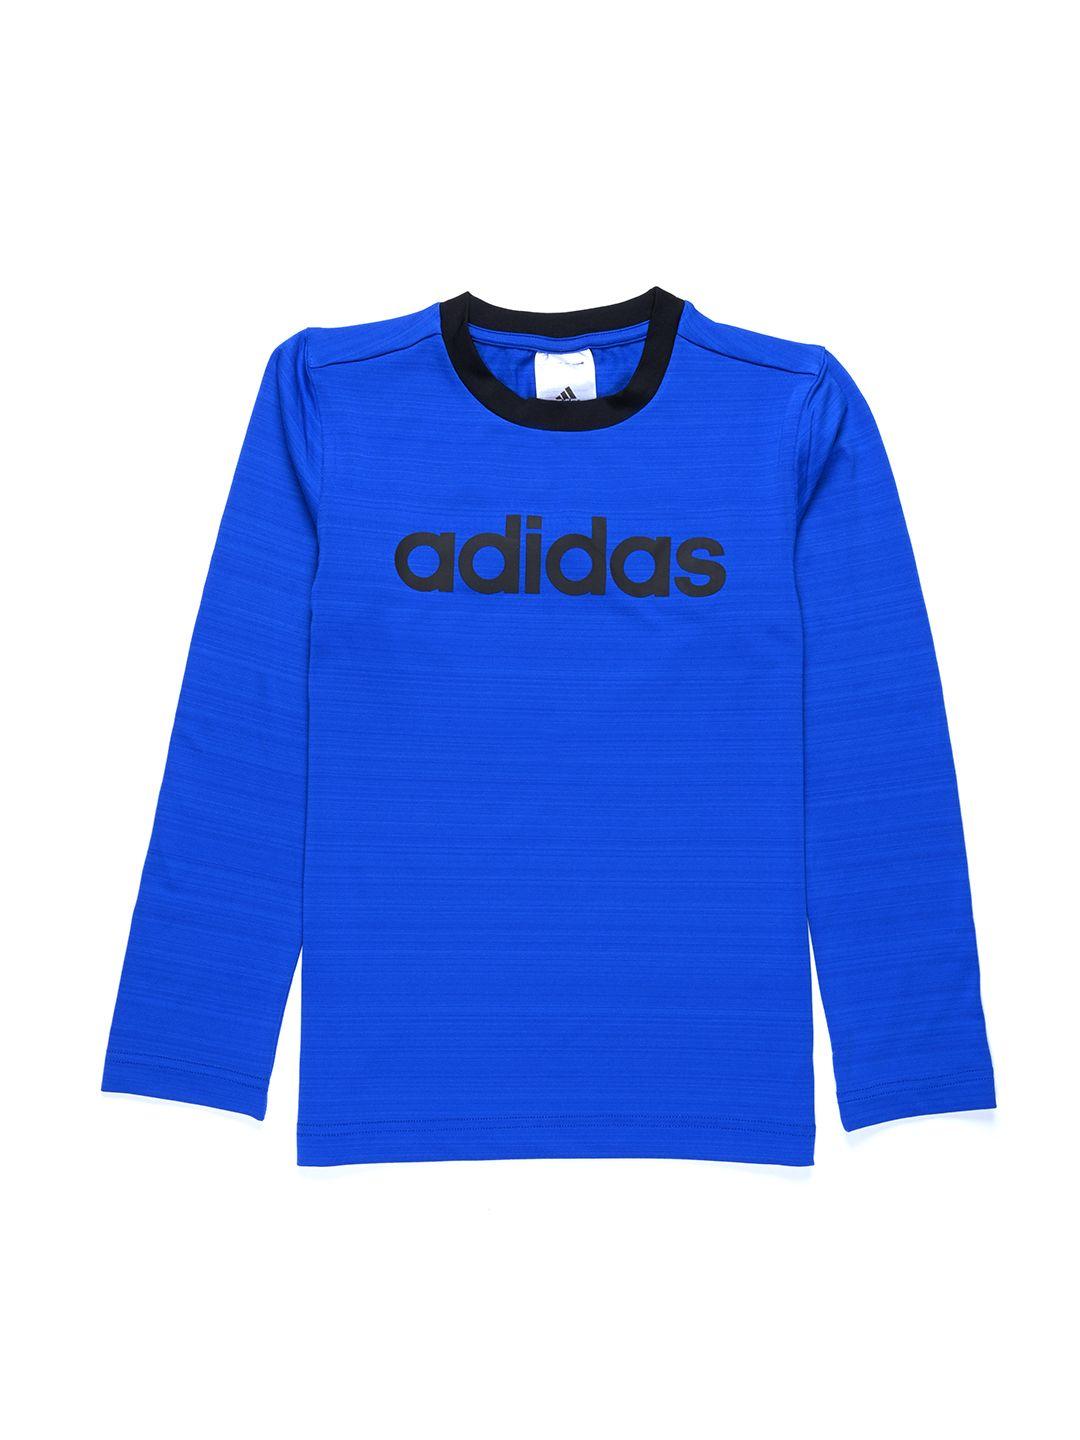 adidas boys blue & black brand logo mel printed t-shirt